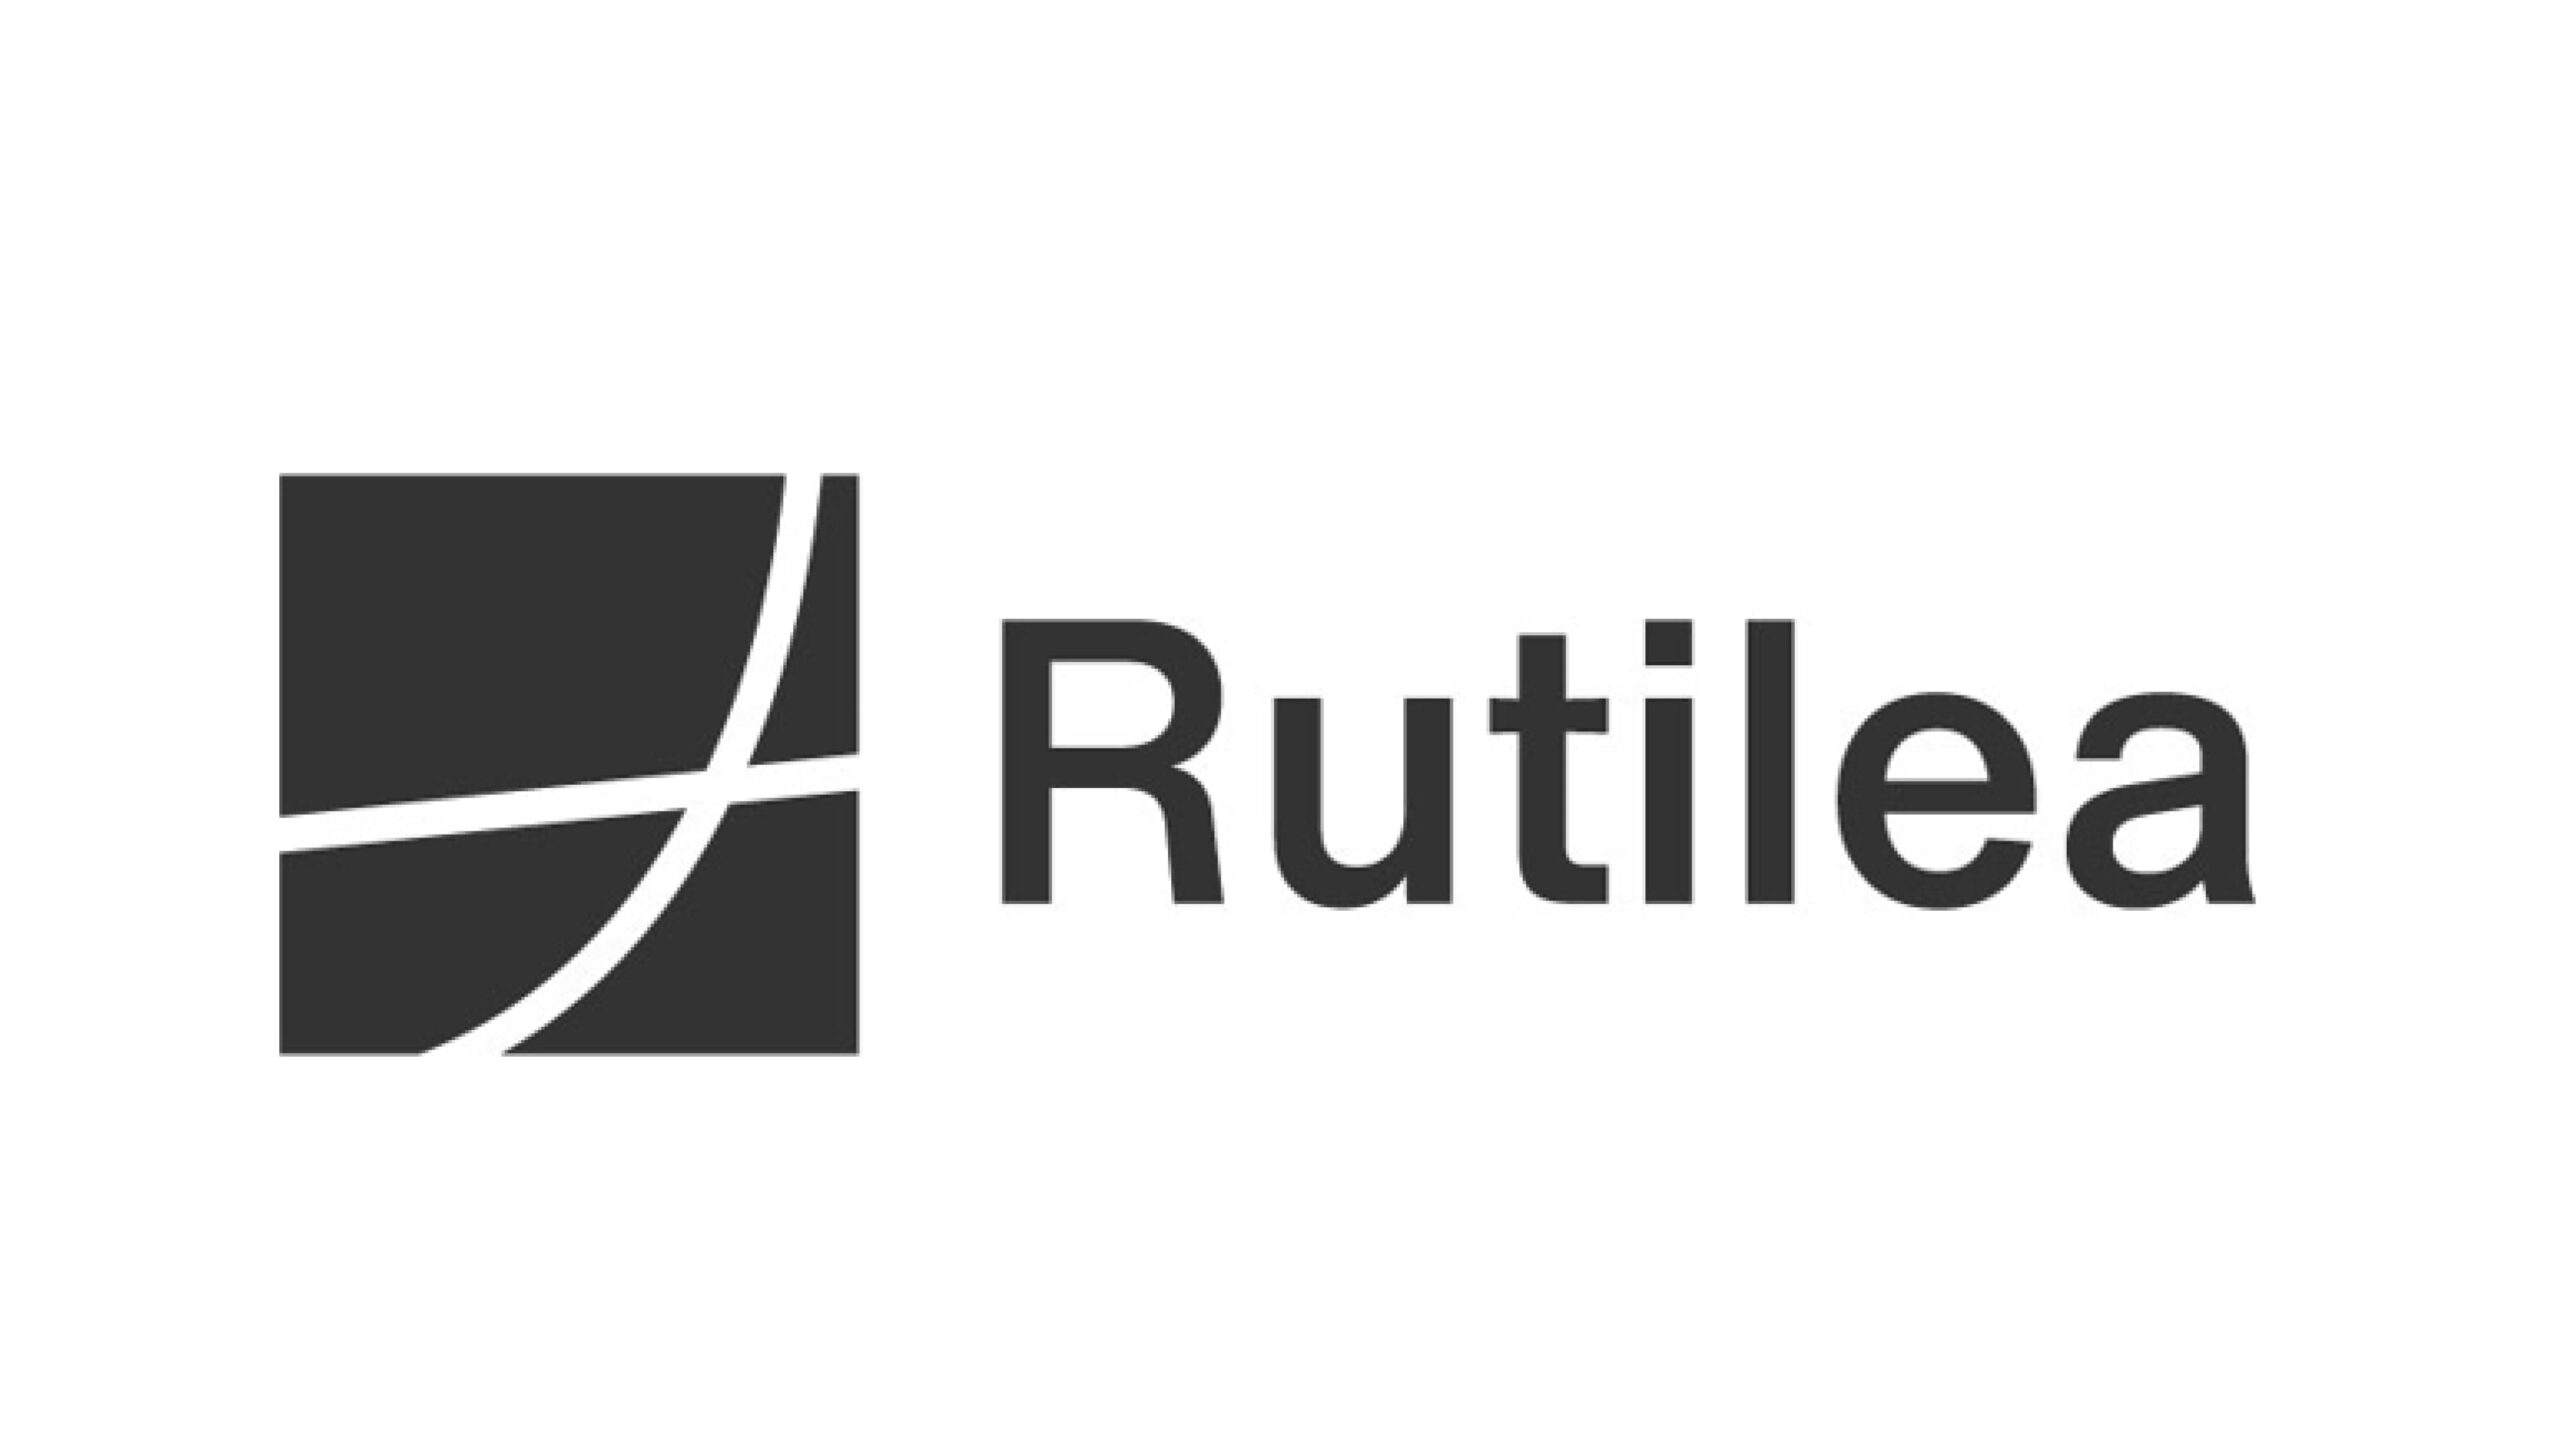 株式会社RUTILEA、シリーズ C1ラウンドにて約3億円の資金調達